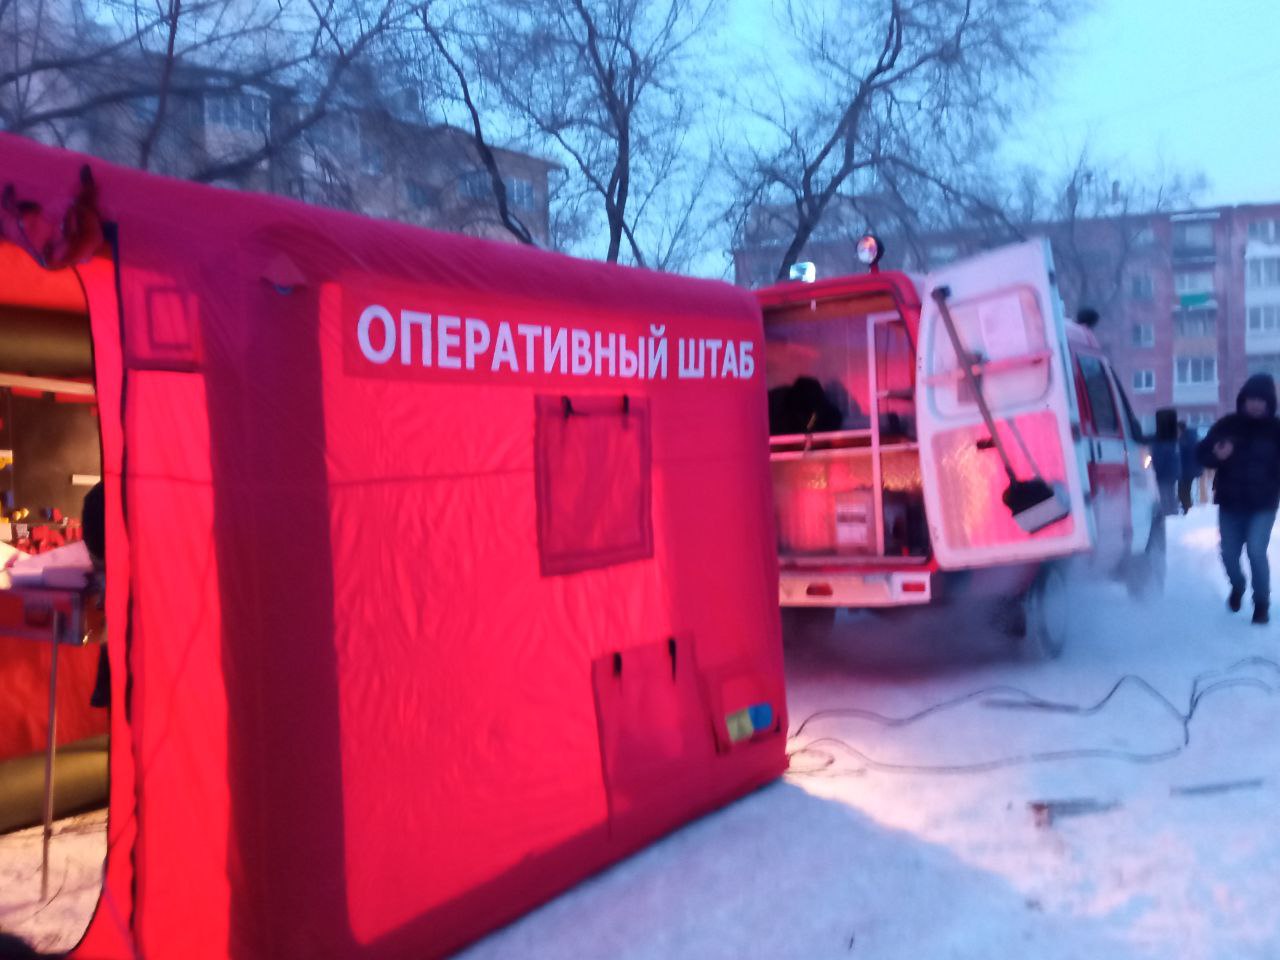 Спасатели работают на месте взрыва бытового газа в Новосибирске